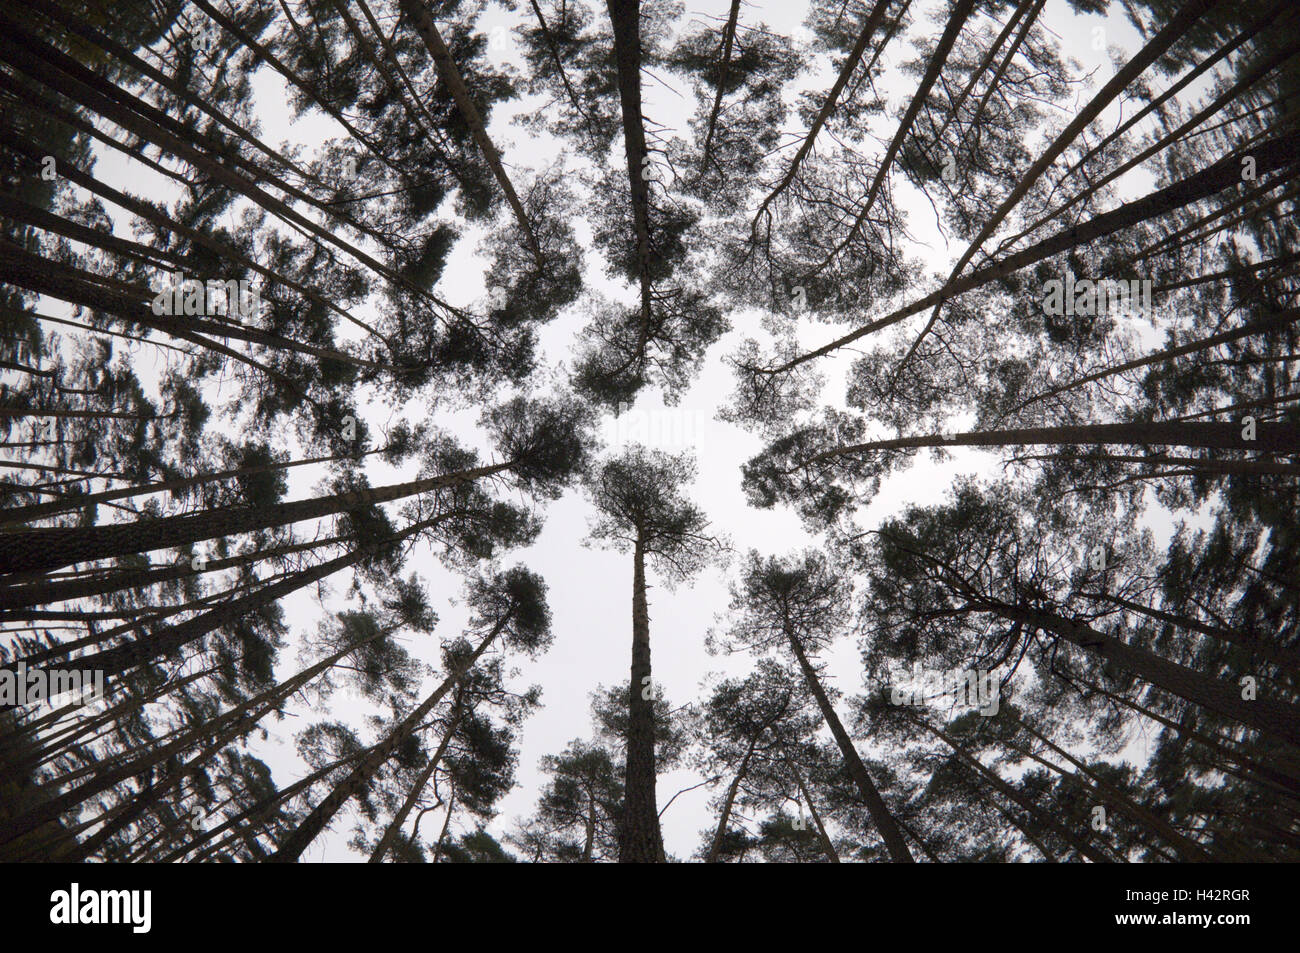 La foresta di pini, prospettive di rana, fisheye, Foto Stock